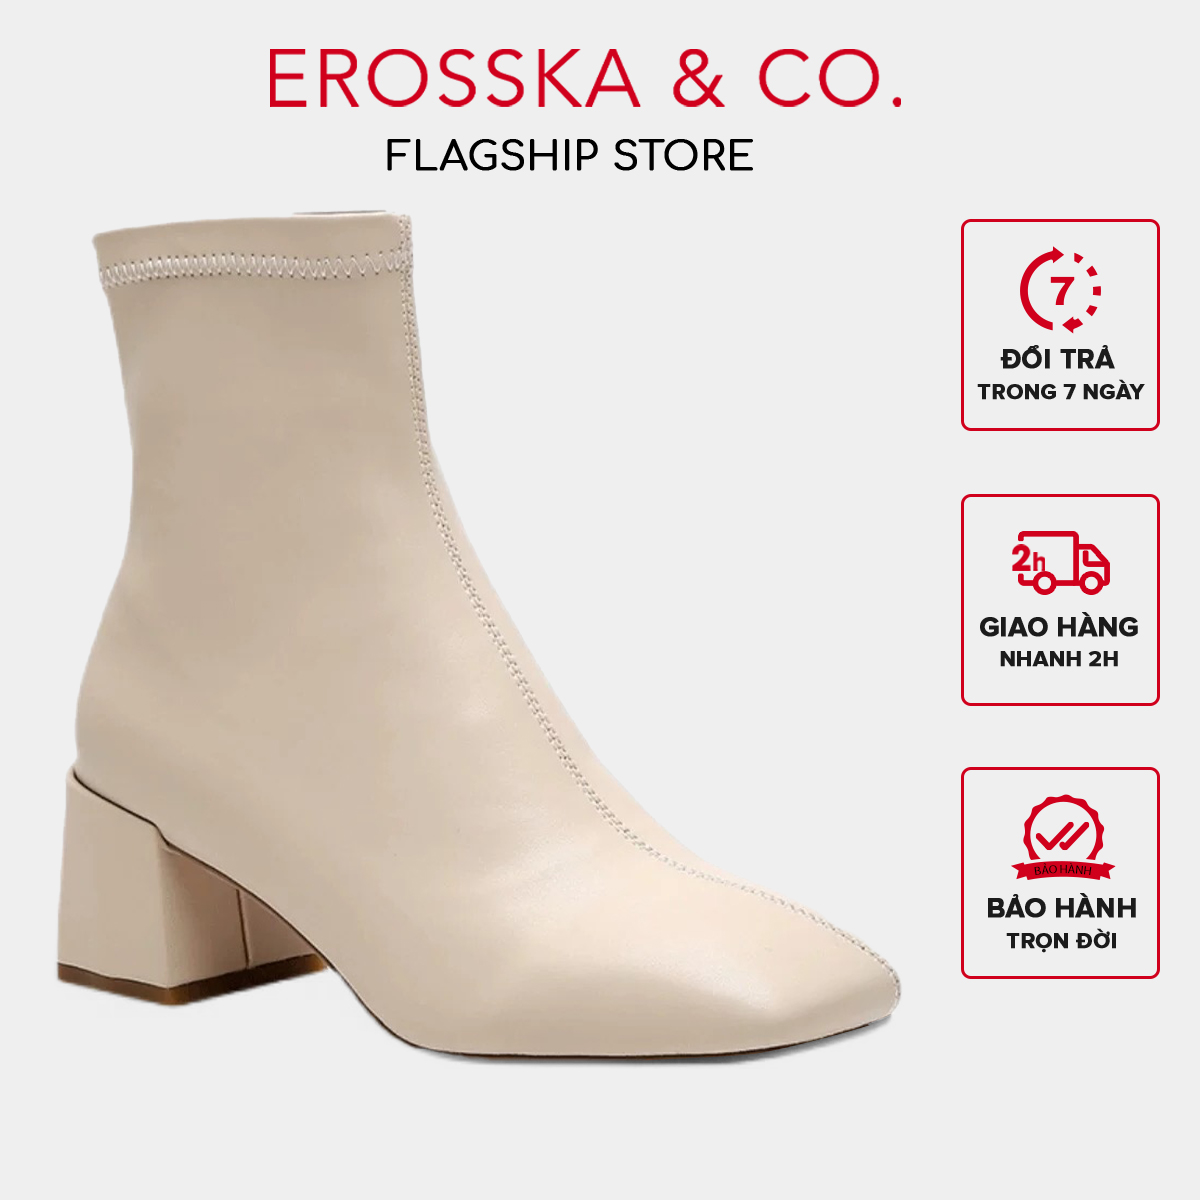 Erosska - Giày boot nữ cao cấp gót vuông có khoá kéo sau - GB010